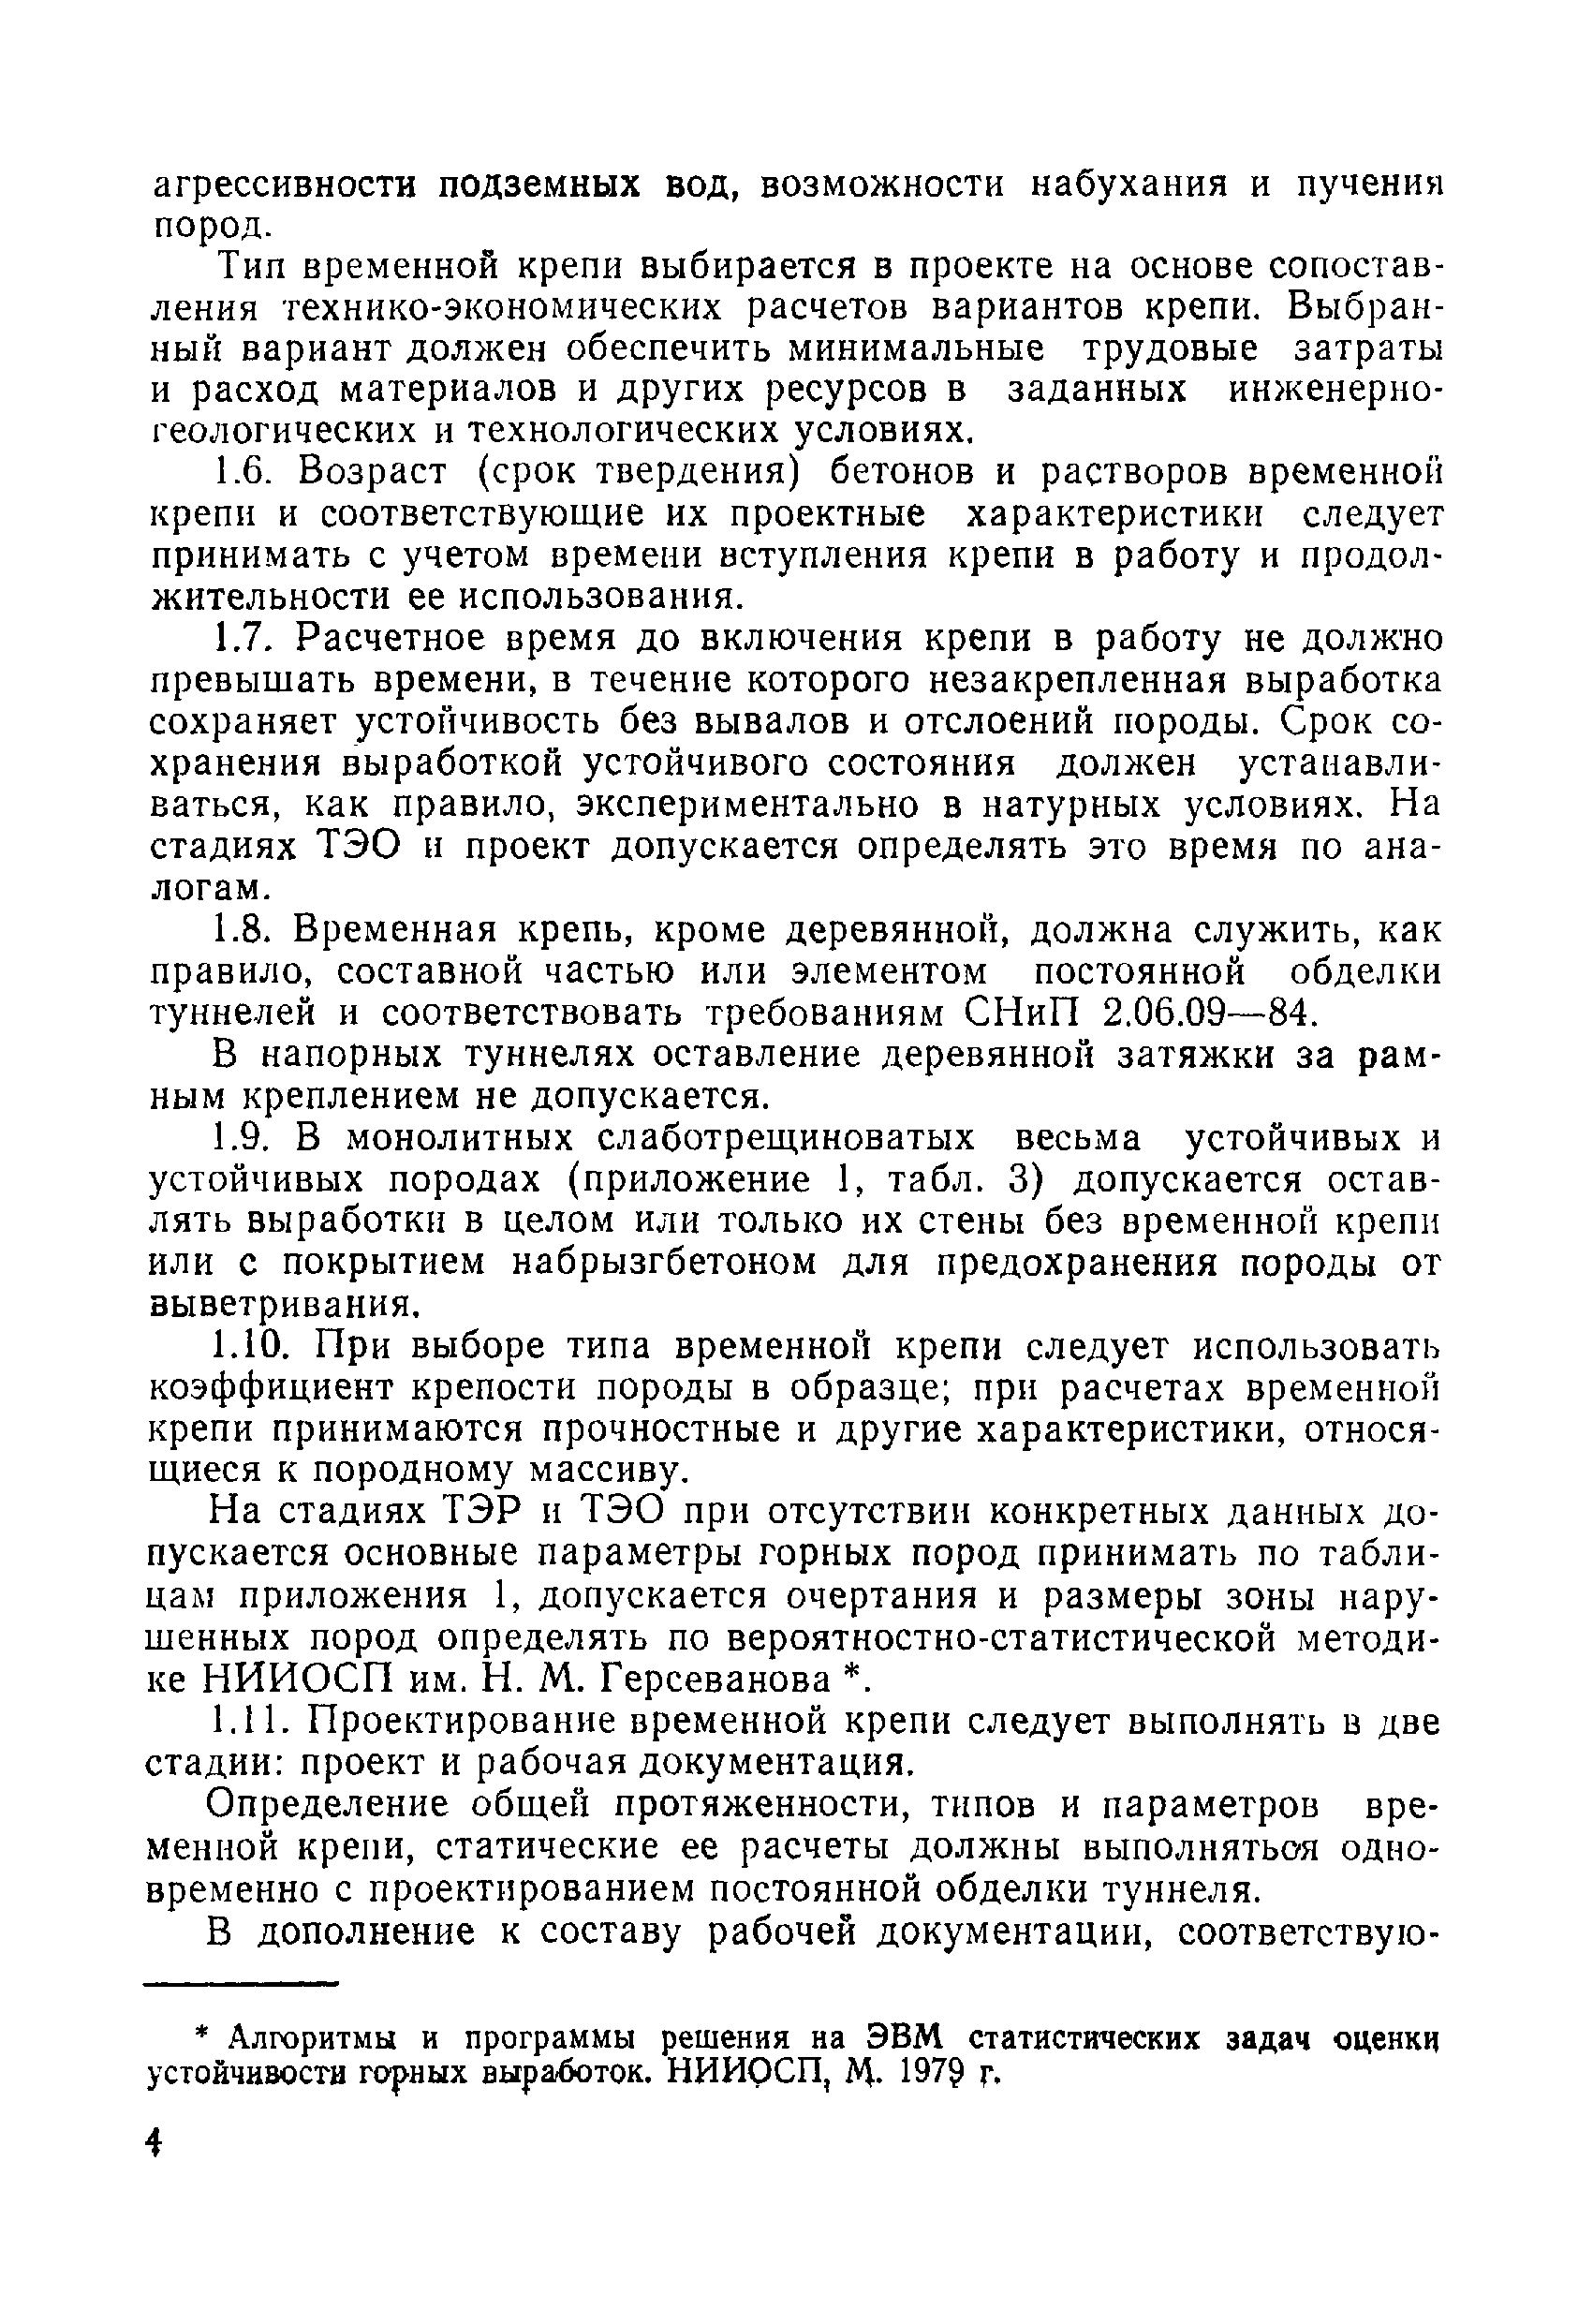 ВСН 49-86 Минэнерго СССР